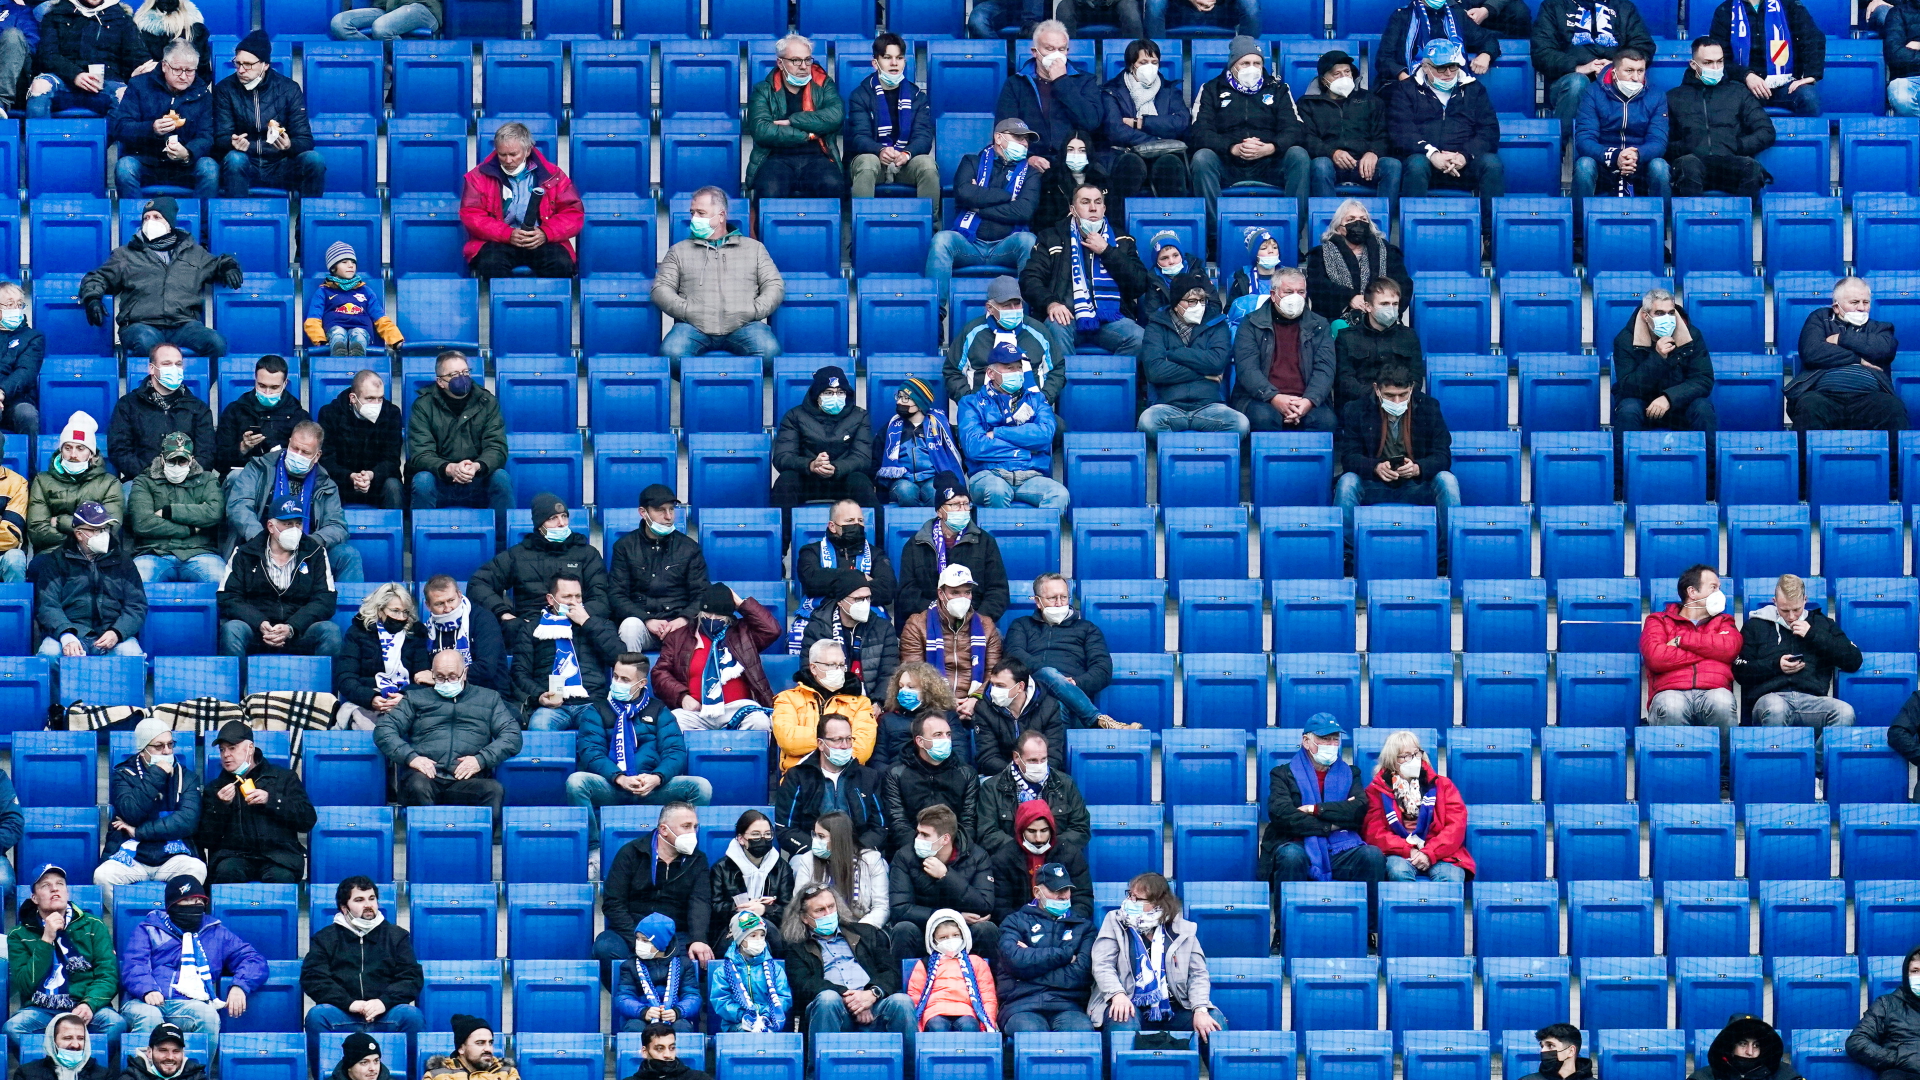 Leere Ränge im Hoffenheimer Stadion aufgrund der Corona-Beschränkungen | dpa